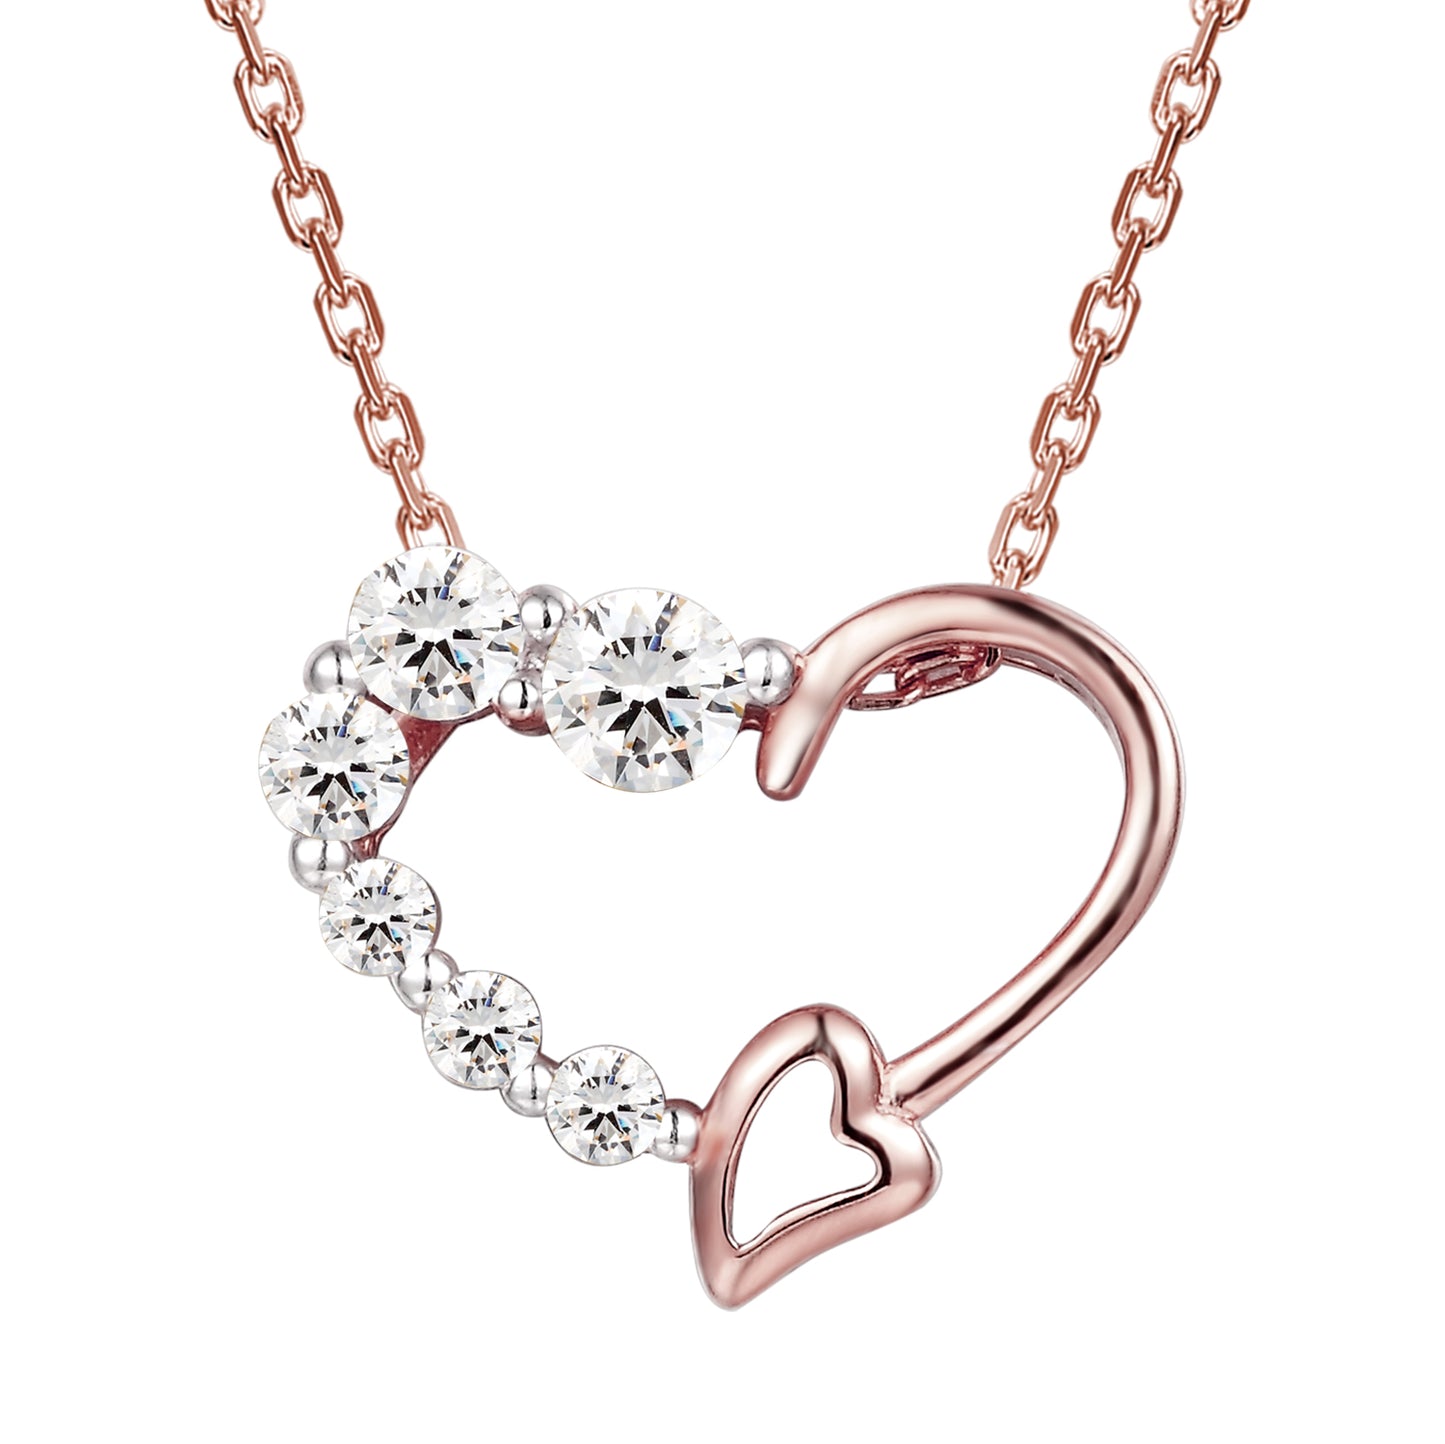 Designer 14k Rose Gold Finish Love Heart Pendant Necklace Set